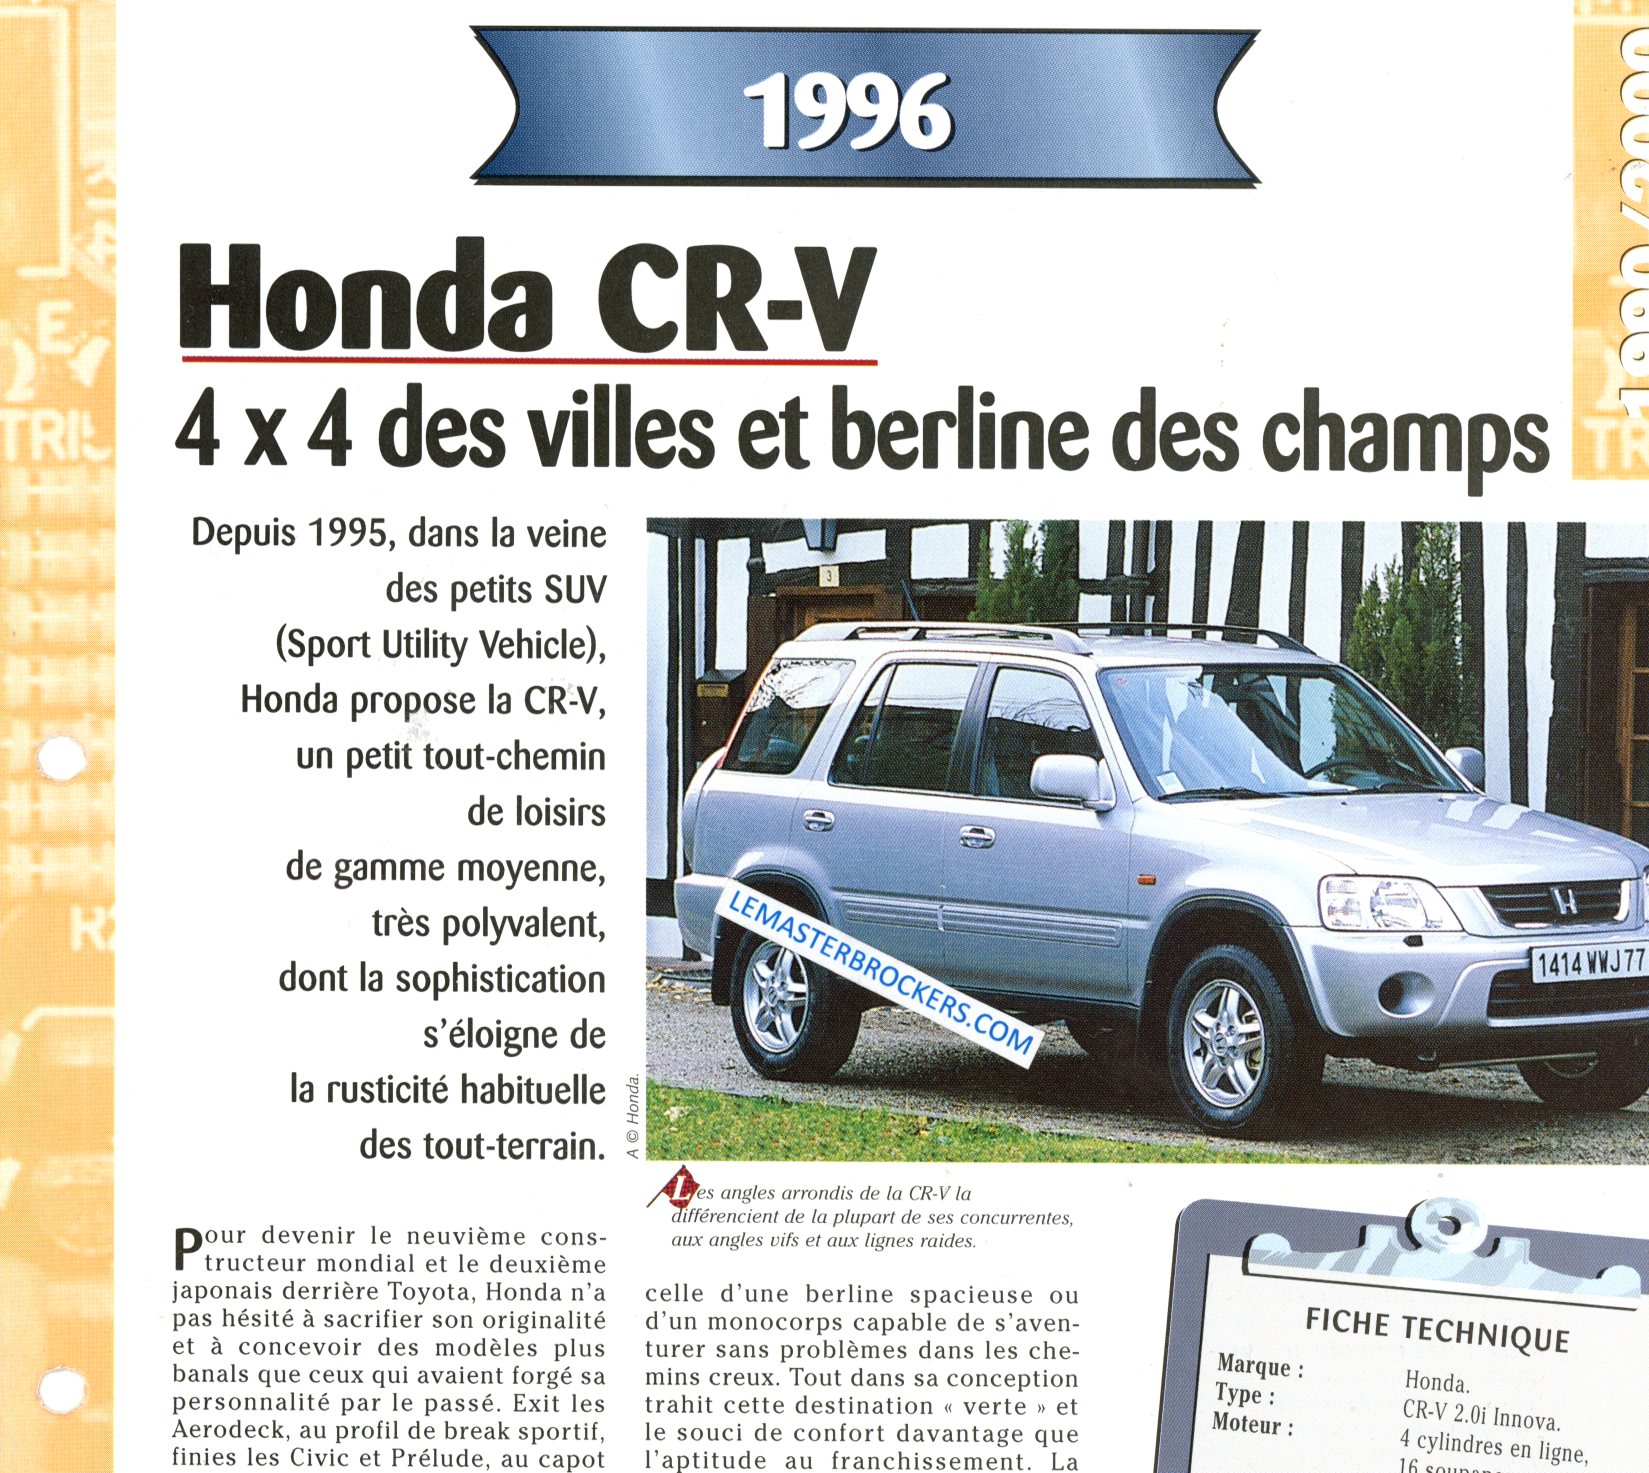 HONDA CR-V 1996 FICHE TECHNIQUE